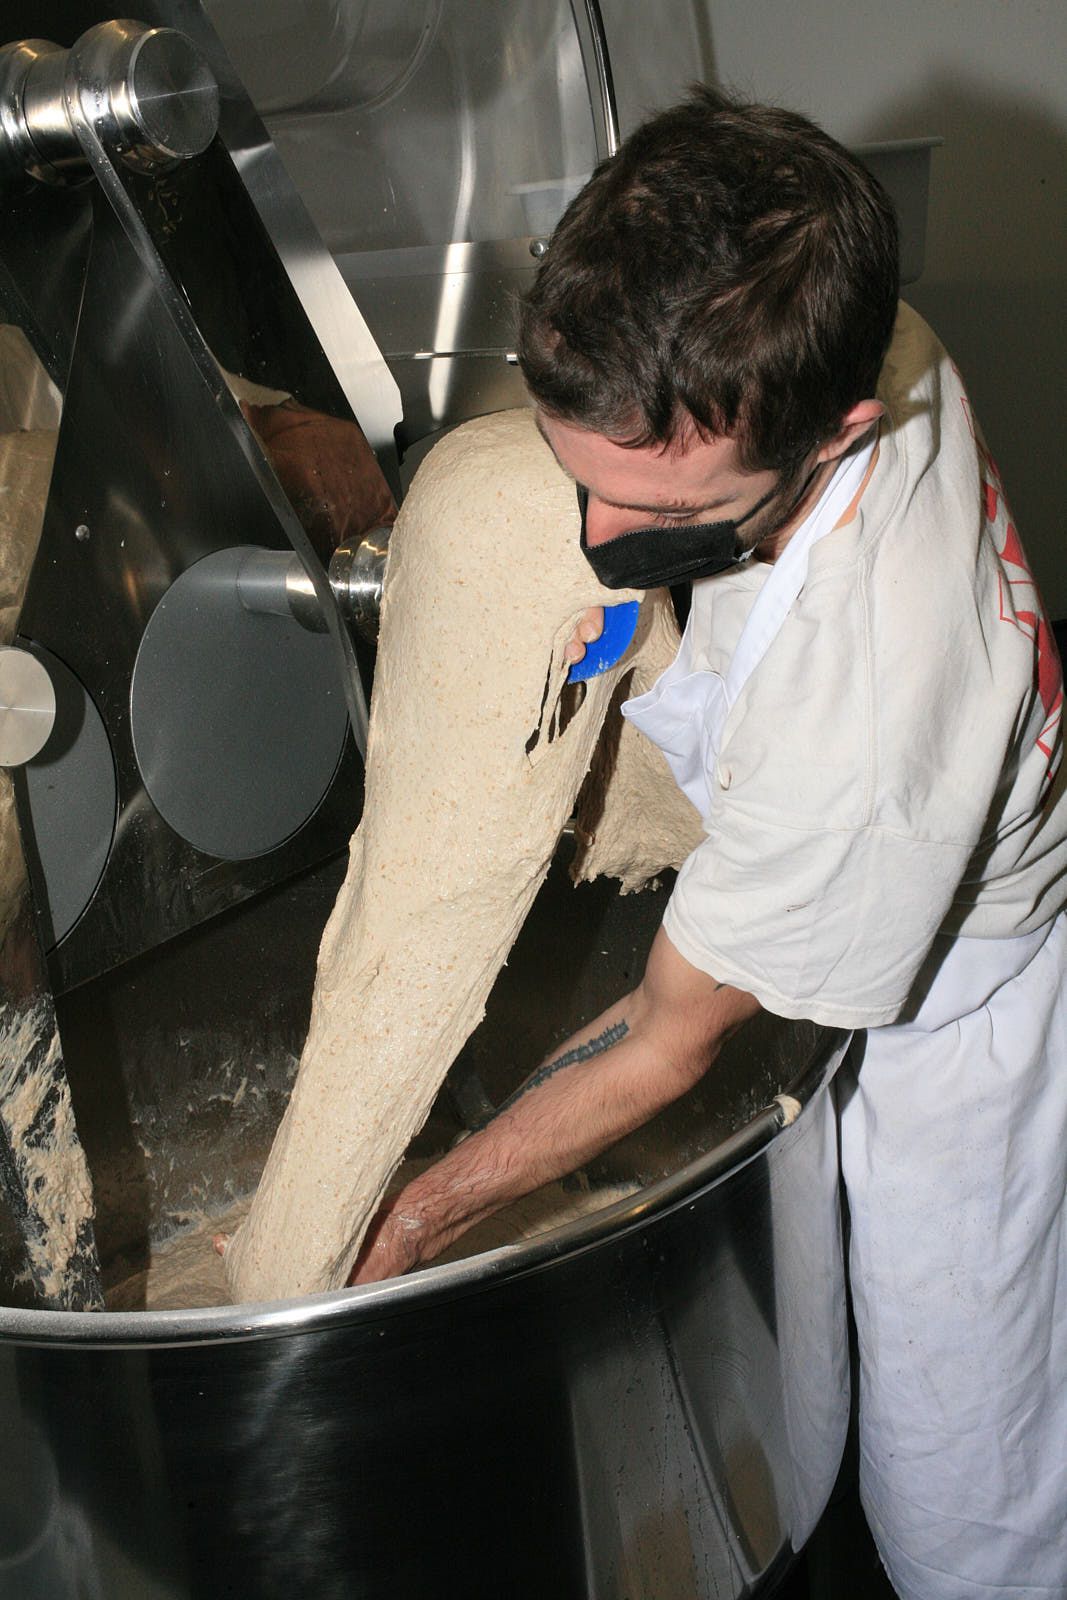 A baker pulls dough from a standmixer